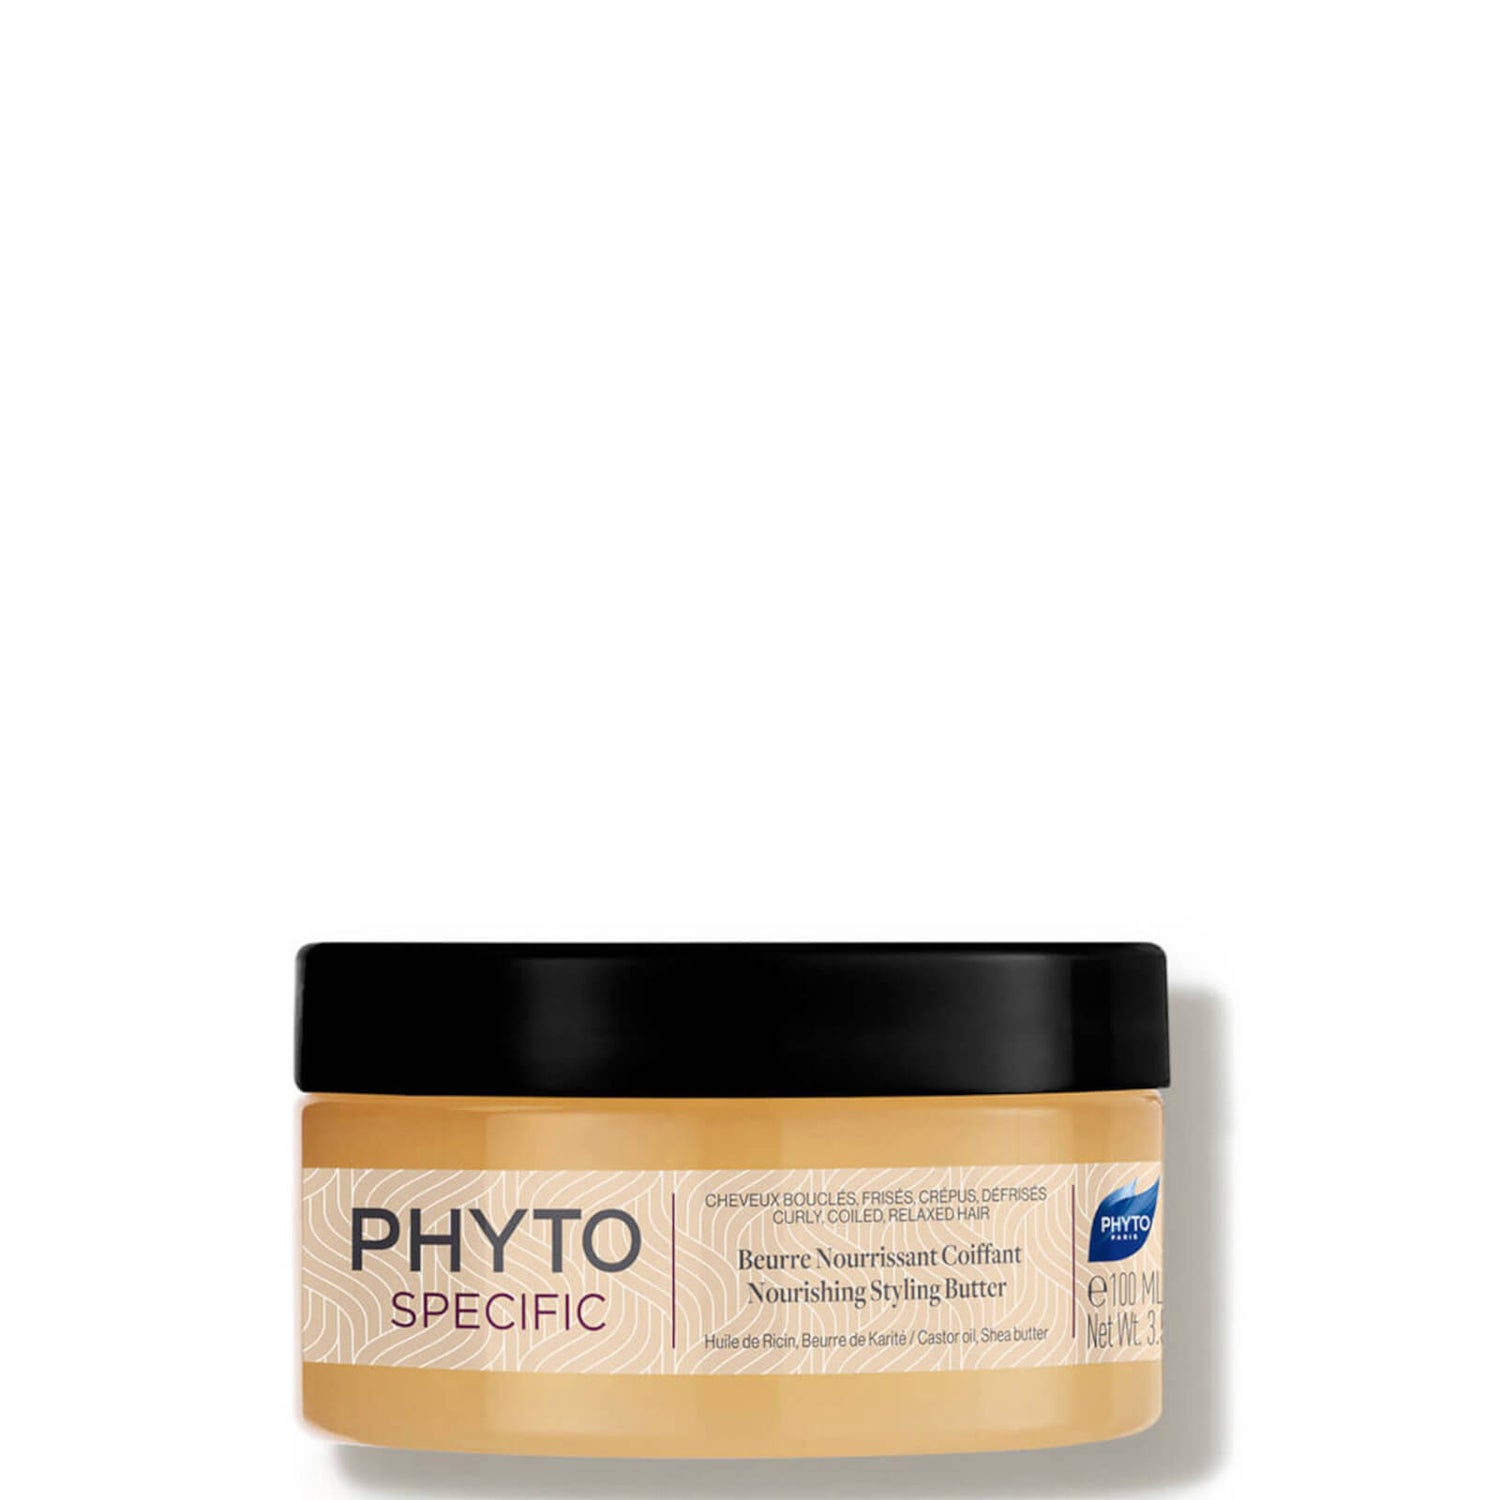 Phyto PhytoSpecific Nourishing Styling Butter (3.38 fl. oz.)